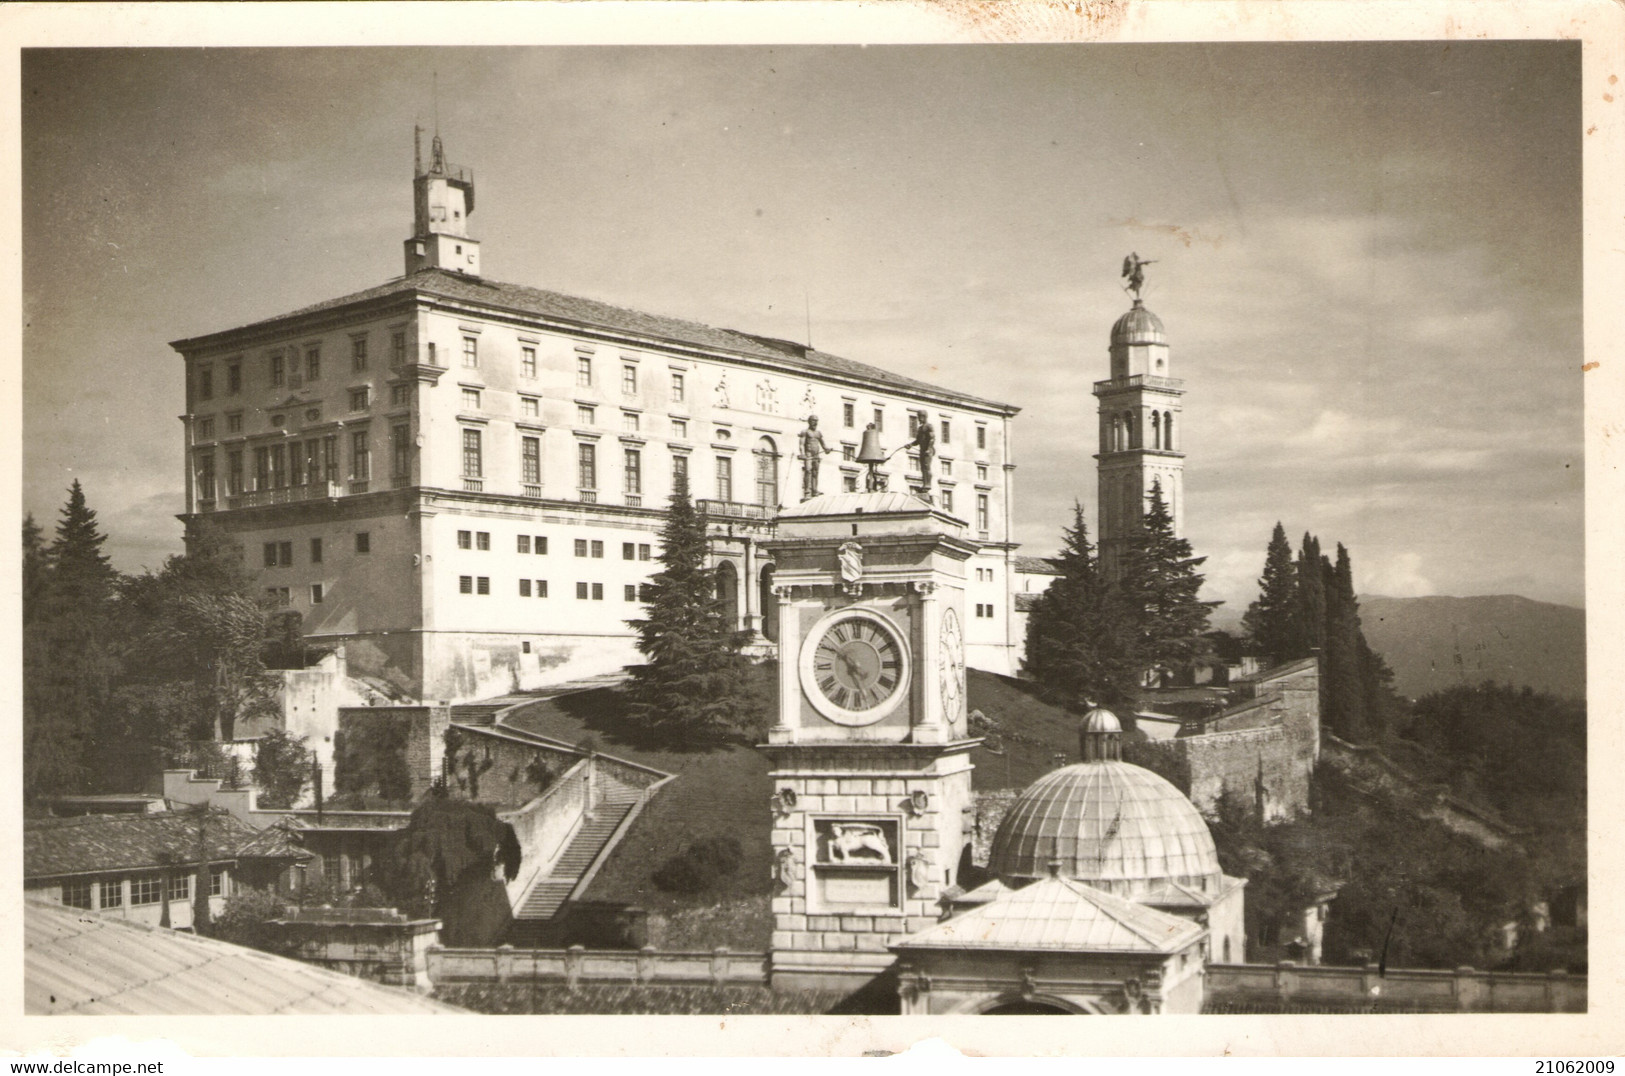 UDINE - CASTEL CHATEAU SCHLOSS - CASTELLO E TORRE DELL'OROLOGIO - V1951, FORMATO PICCOLO - Udine